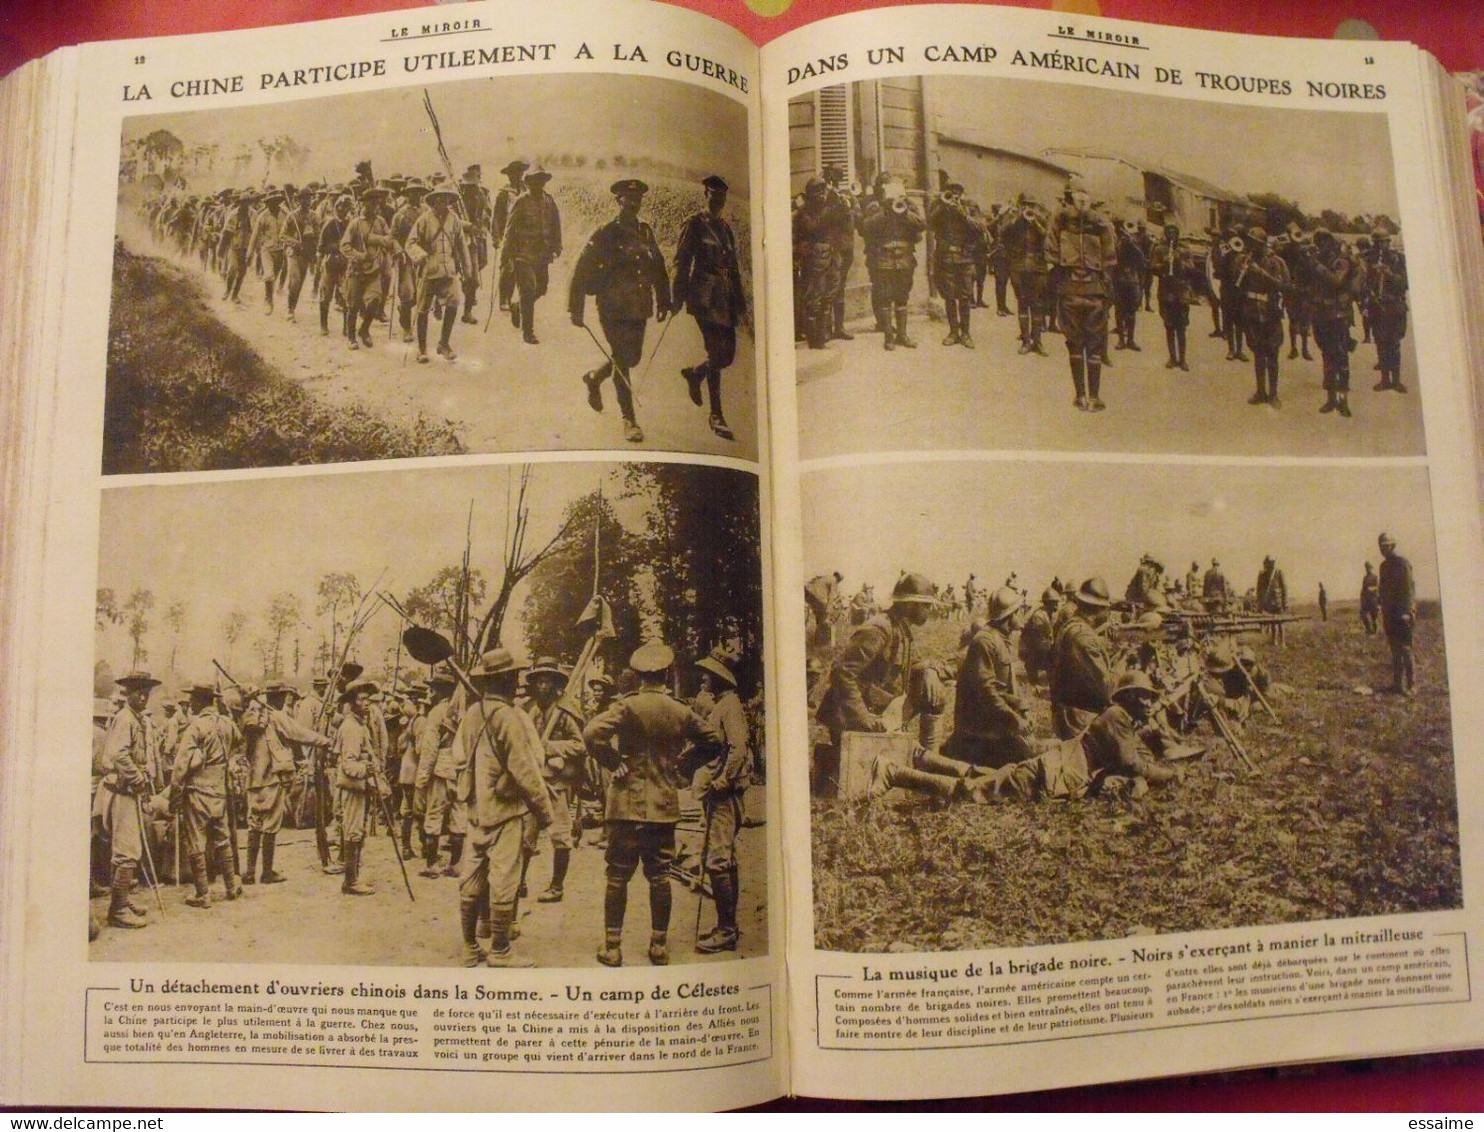 Le miroir recueil reliure 1918 (52 n°). 14-18 très illustrée, documentée. armistice russie bolcheviks